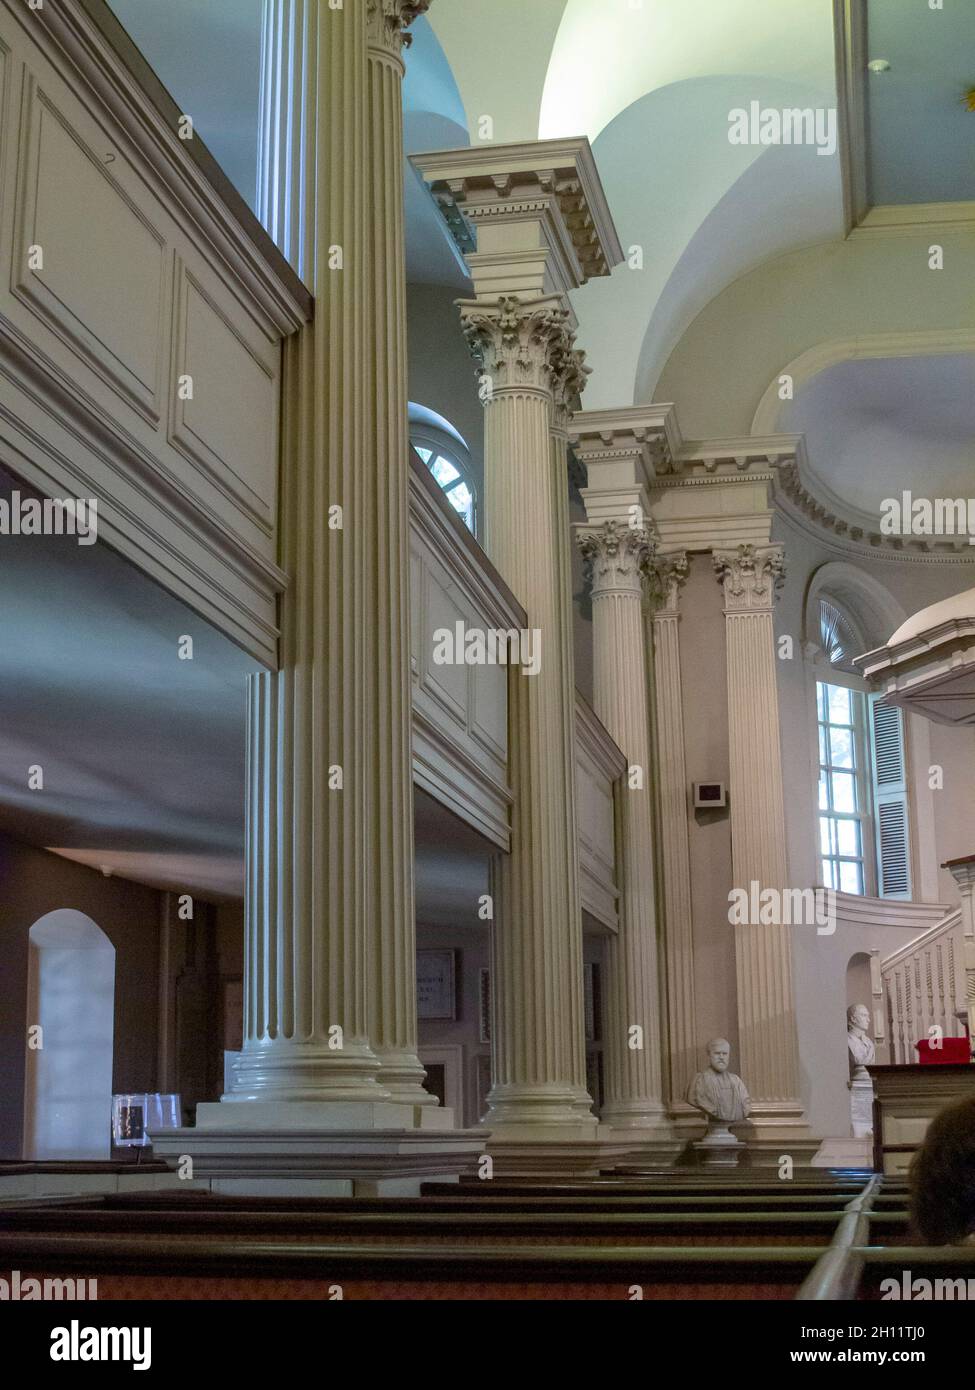 Dettagli architettonici all'interno della King's Chapel in Tremont Street a Boston, Massachusetts Foto Stock